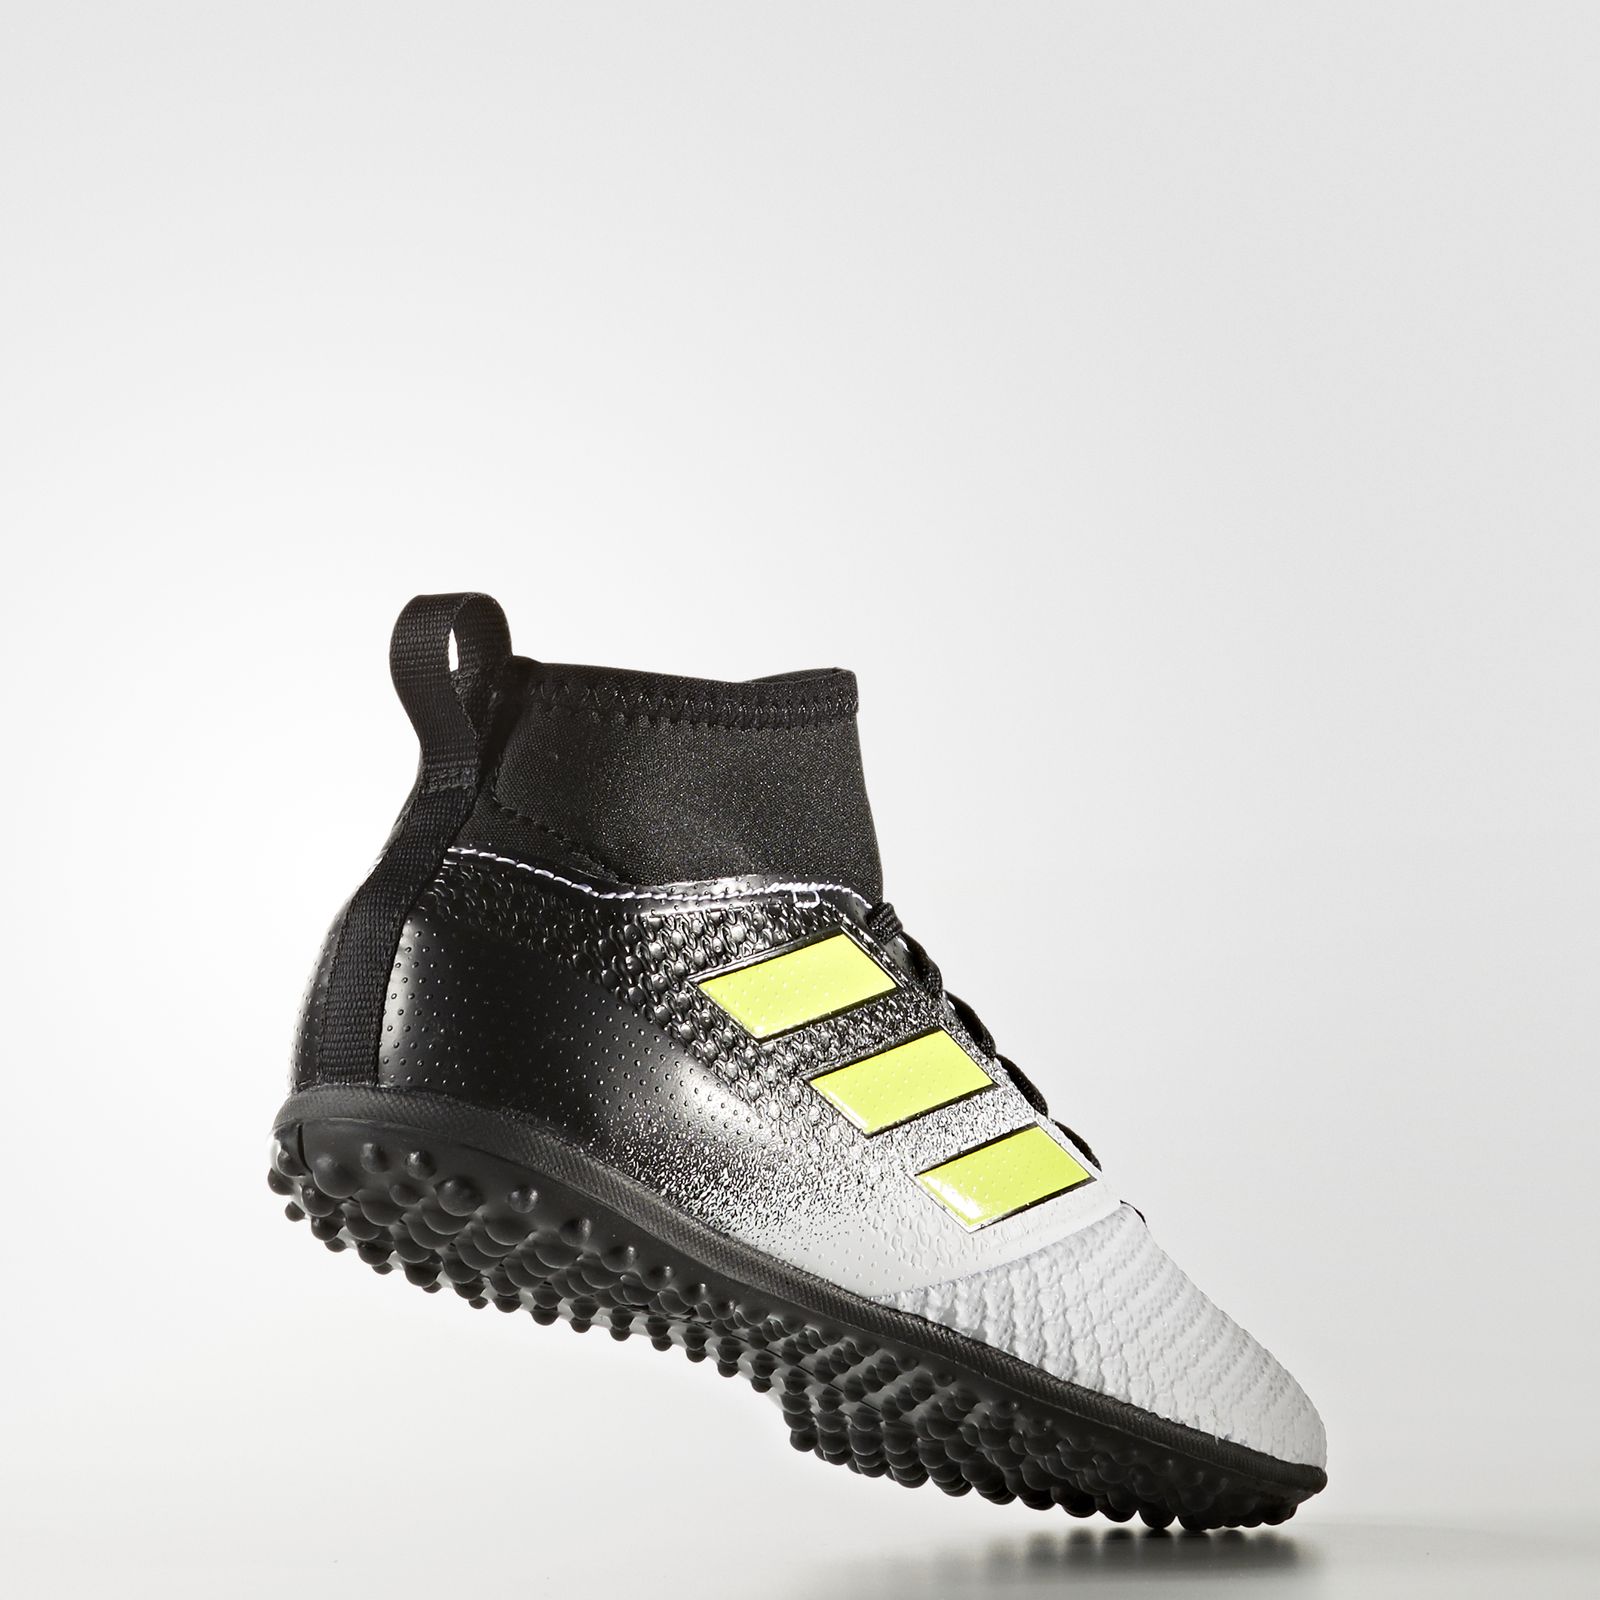  کفش فوتبال بچگانه آدیداس مدل ACE TANGO17.3 S77085 -  - 5